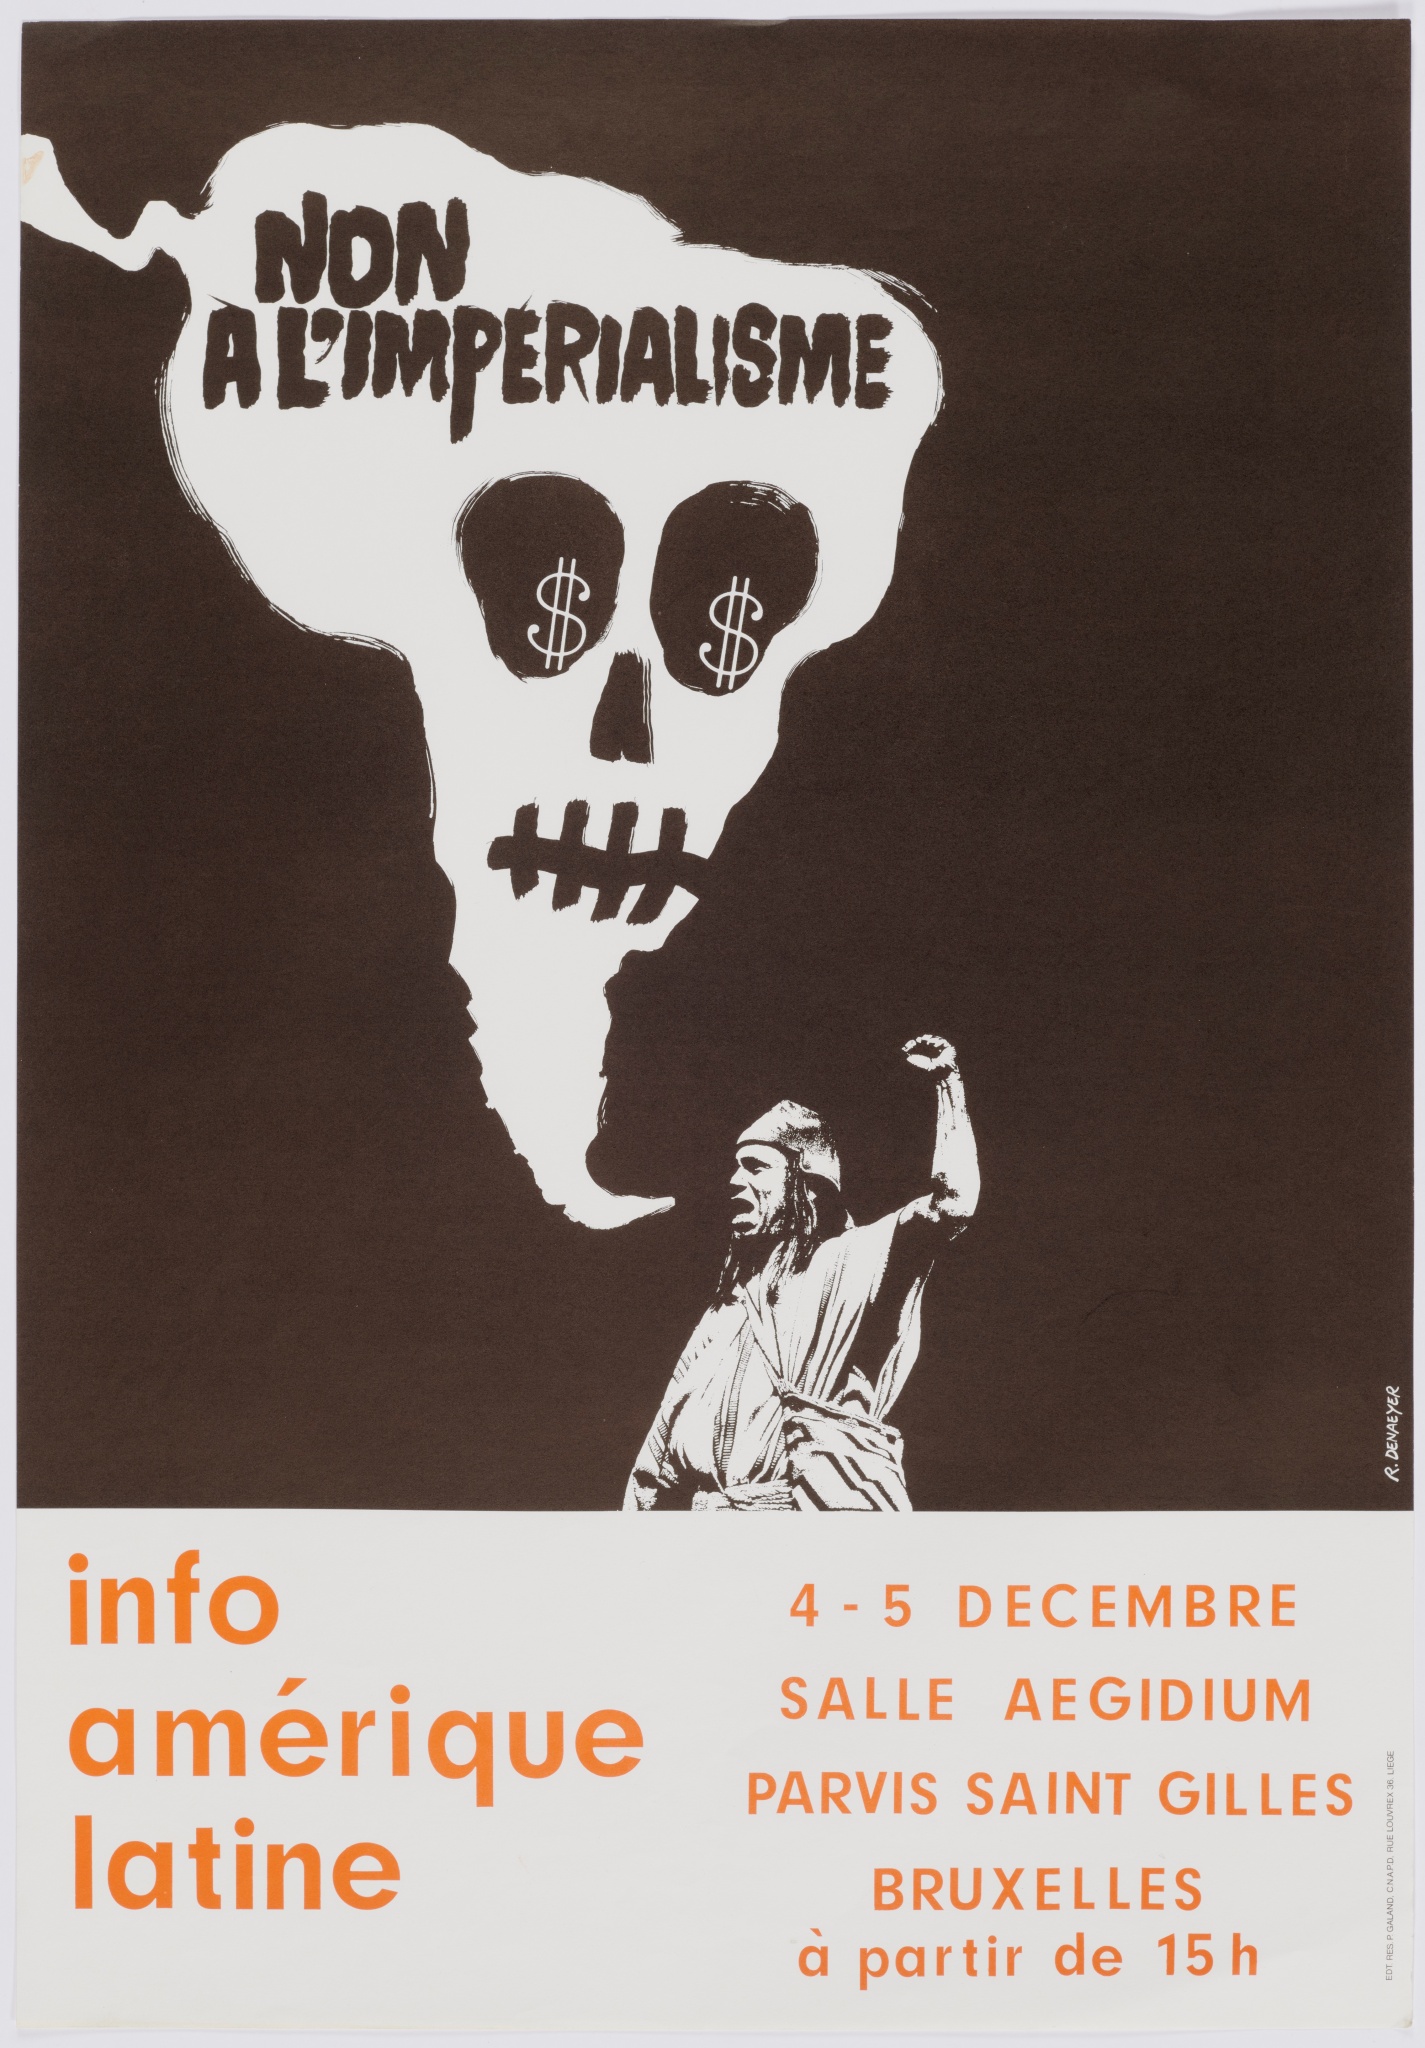 Non à l'impérialisme. Info Amérique latine 4-5 décembre, salle Aegidium Parvis saint Gilles. Bruxelles à partir de 15h